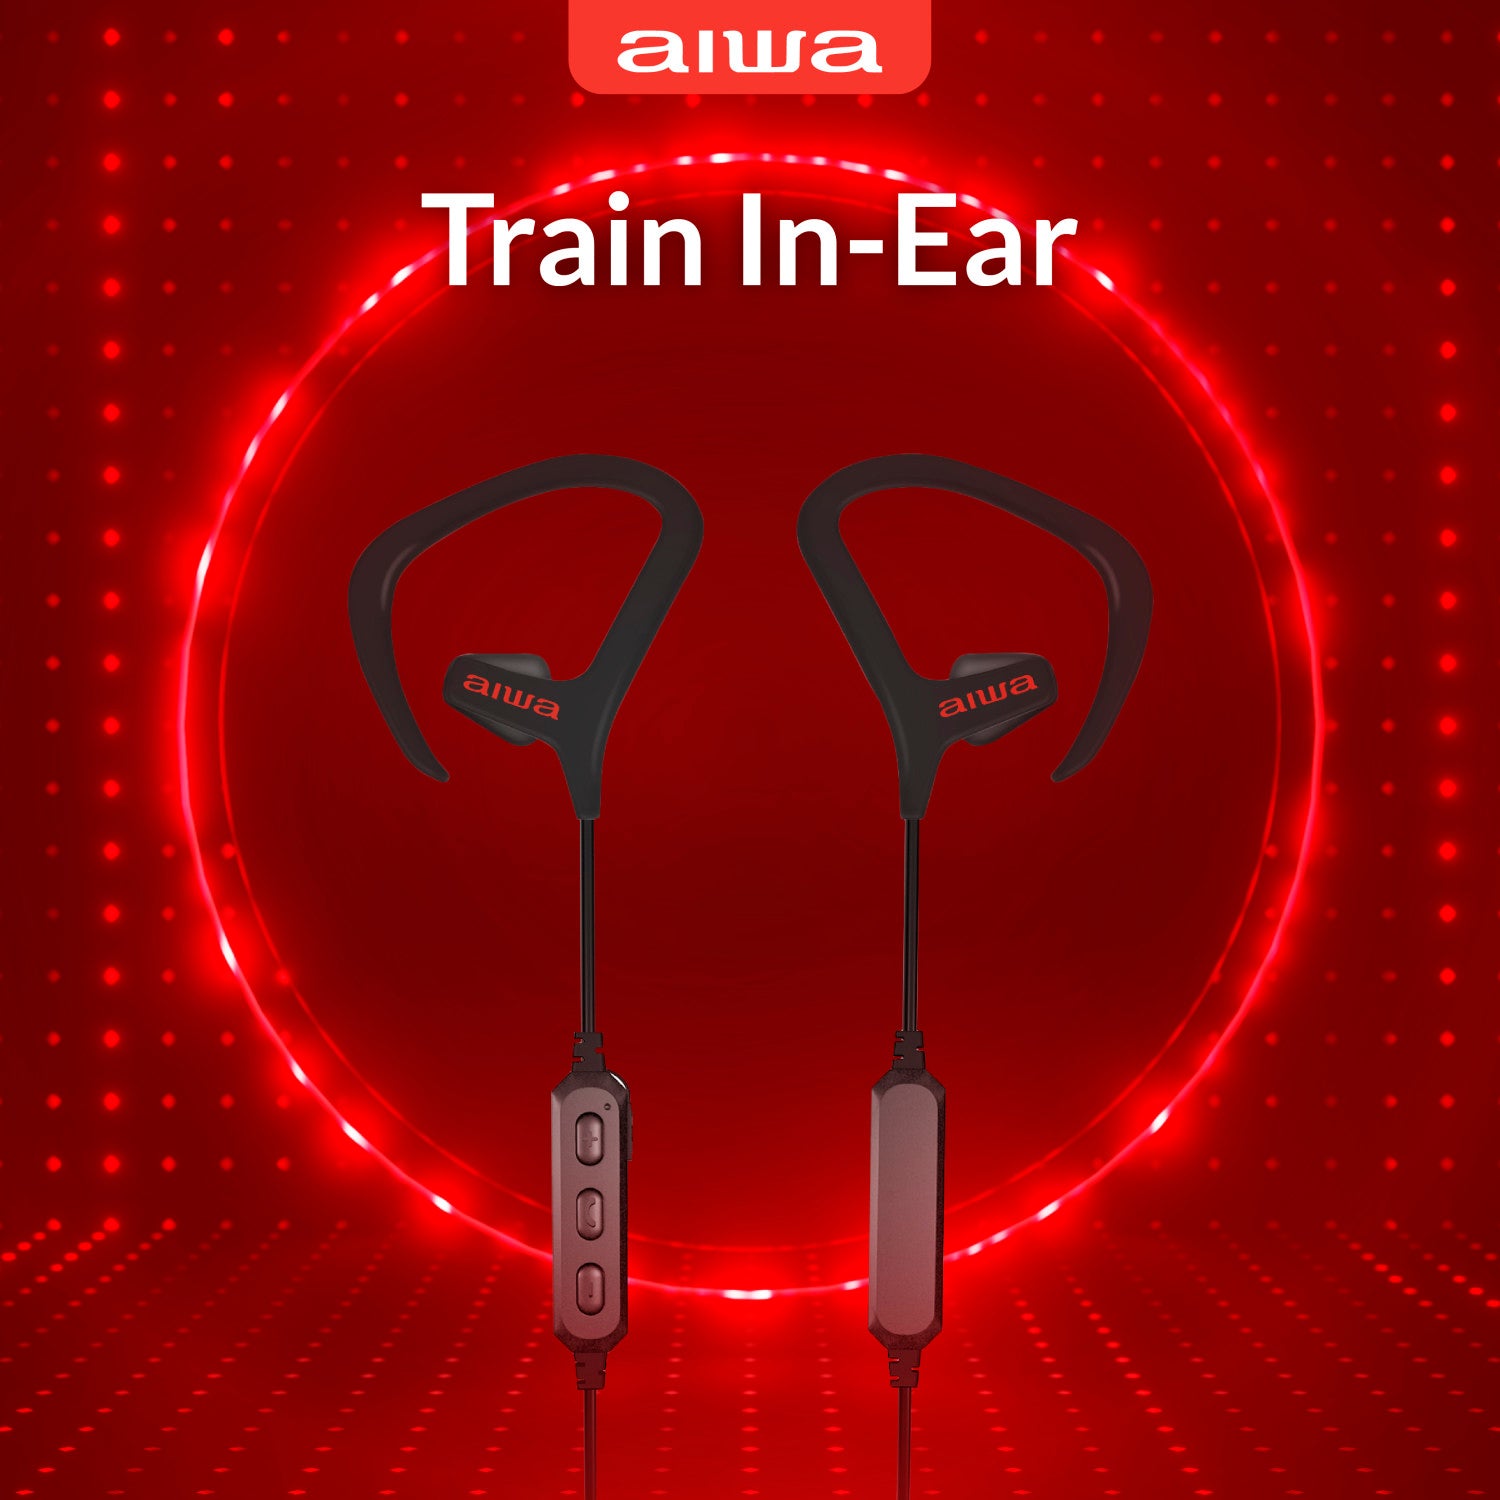 Train In-Ear Wireless Earbuds